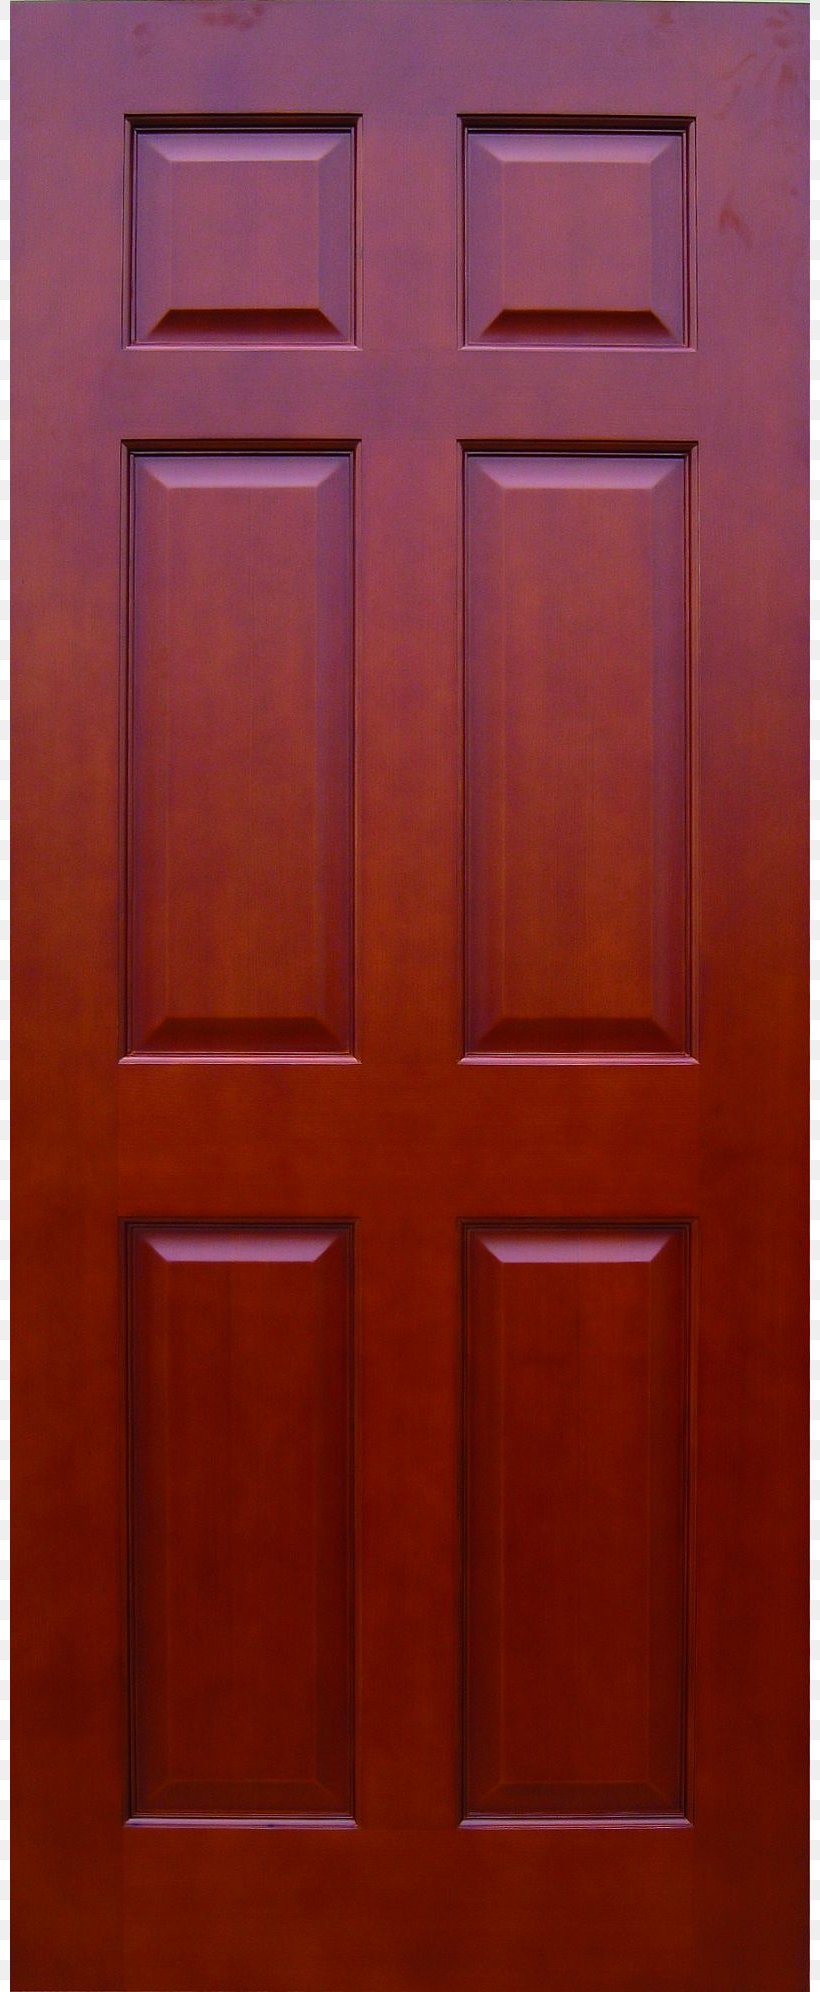 Hardwood Door Wood Stain Brown, PNG, 800x1992px, Door, Hardwood, Symmetry, Wood, Wood Stain Download Free